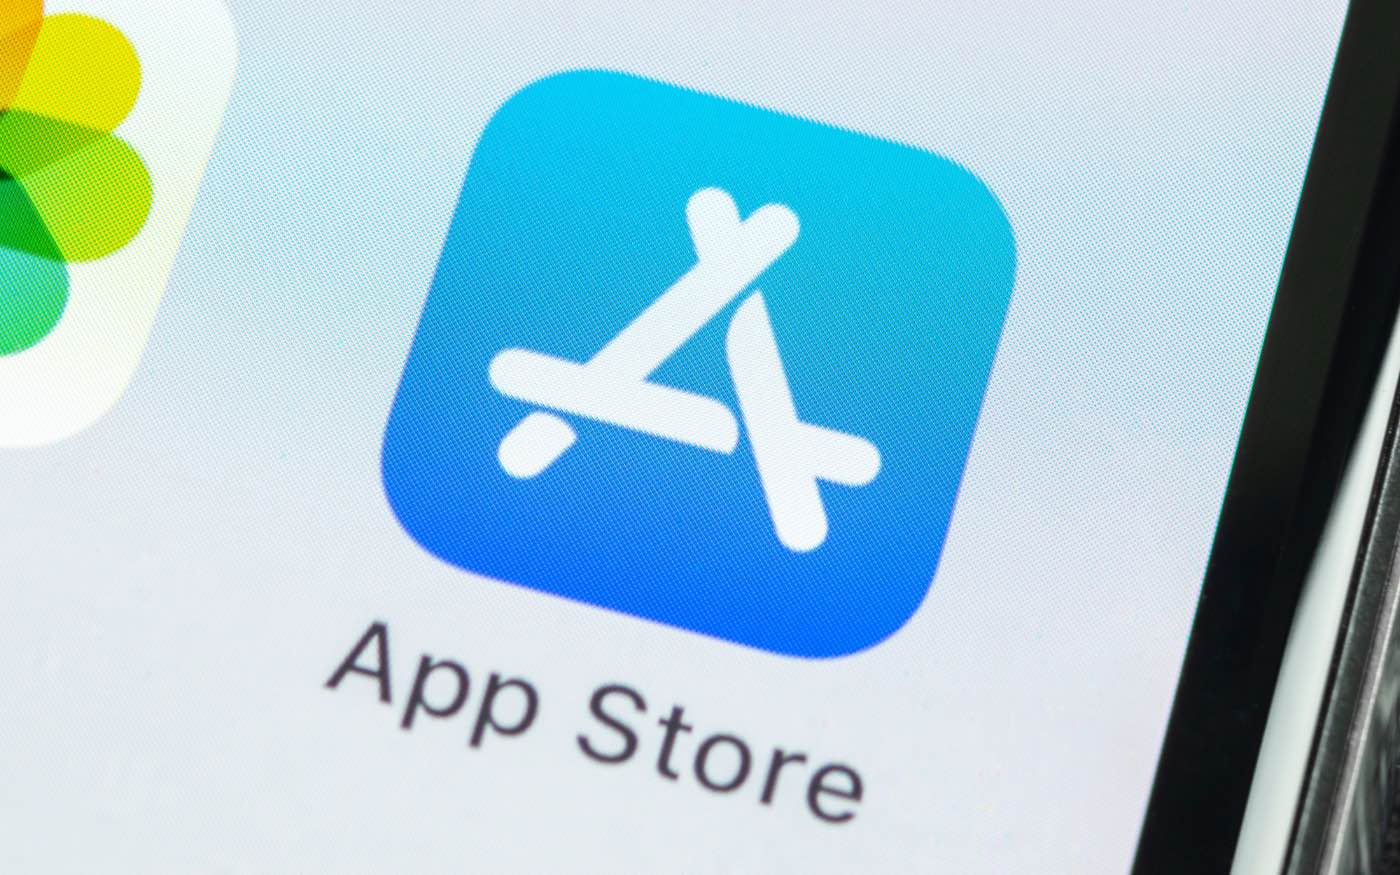 Бывший глава App Store заявил, что Apple намеренно мешает конкурентам развиваться в магазине приложений